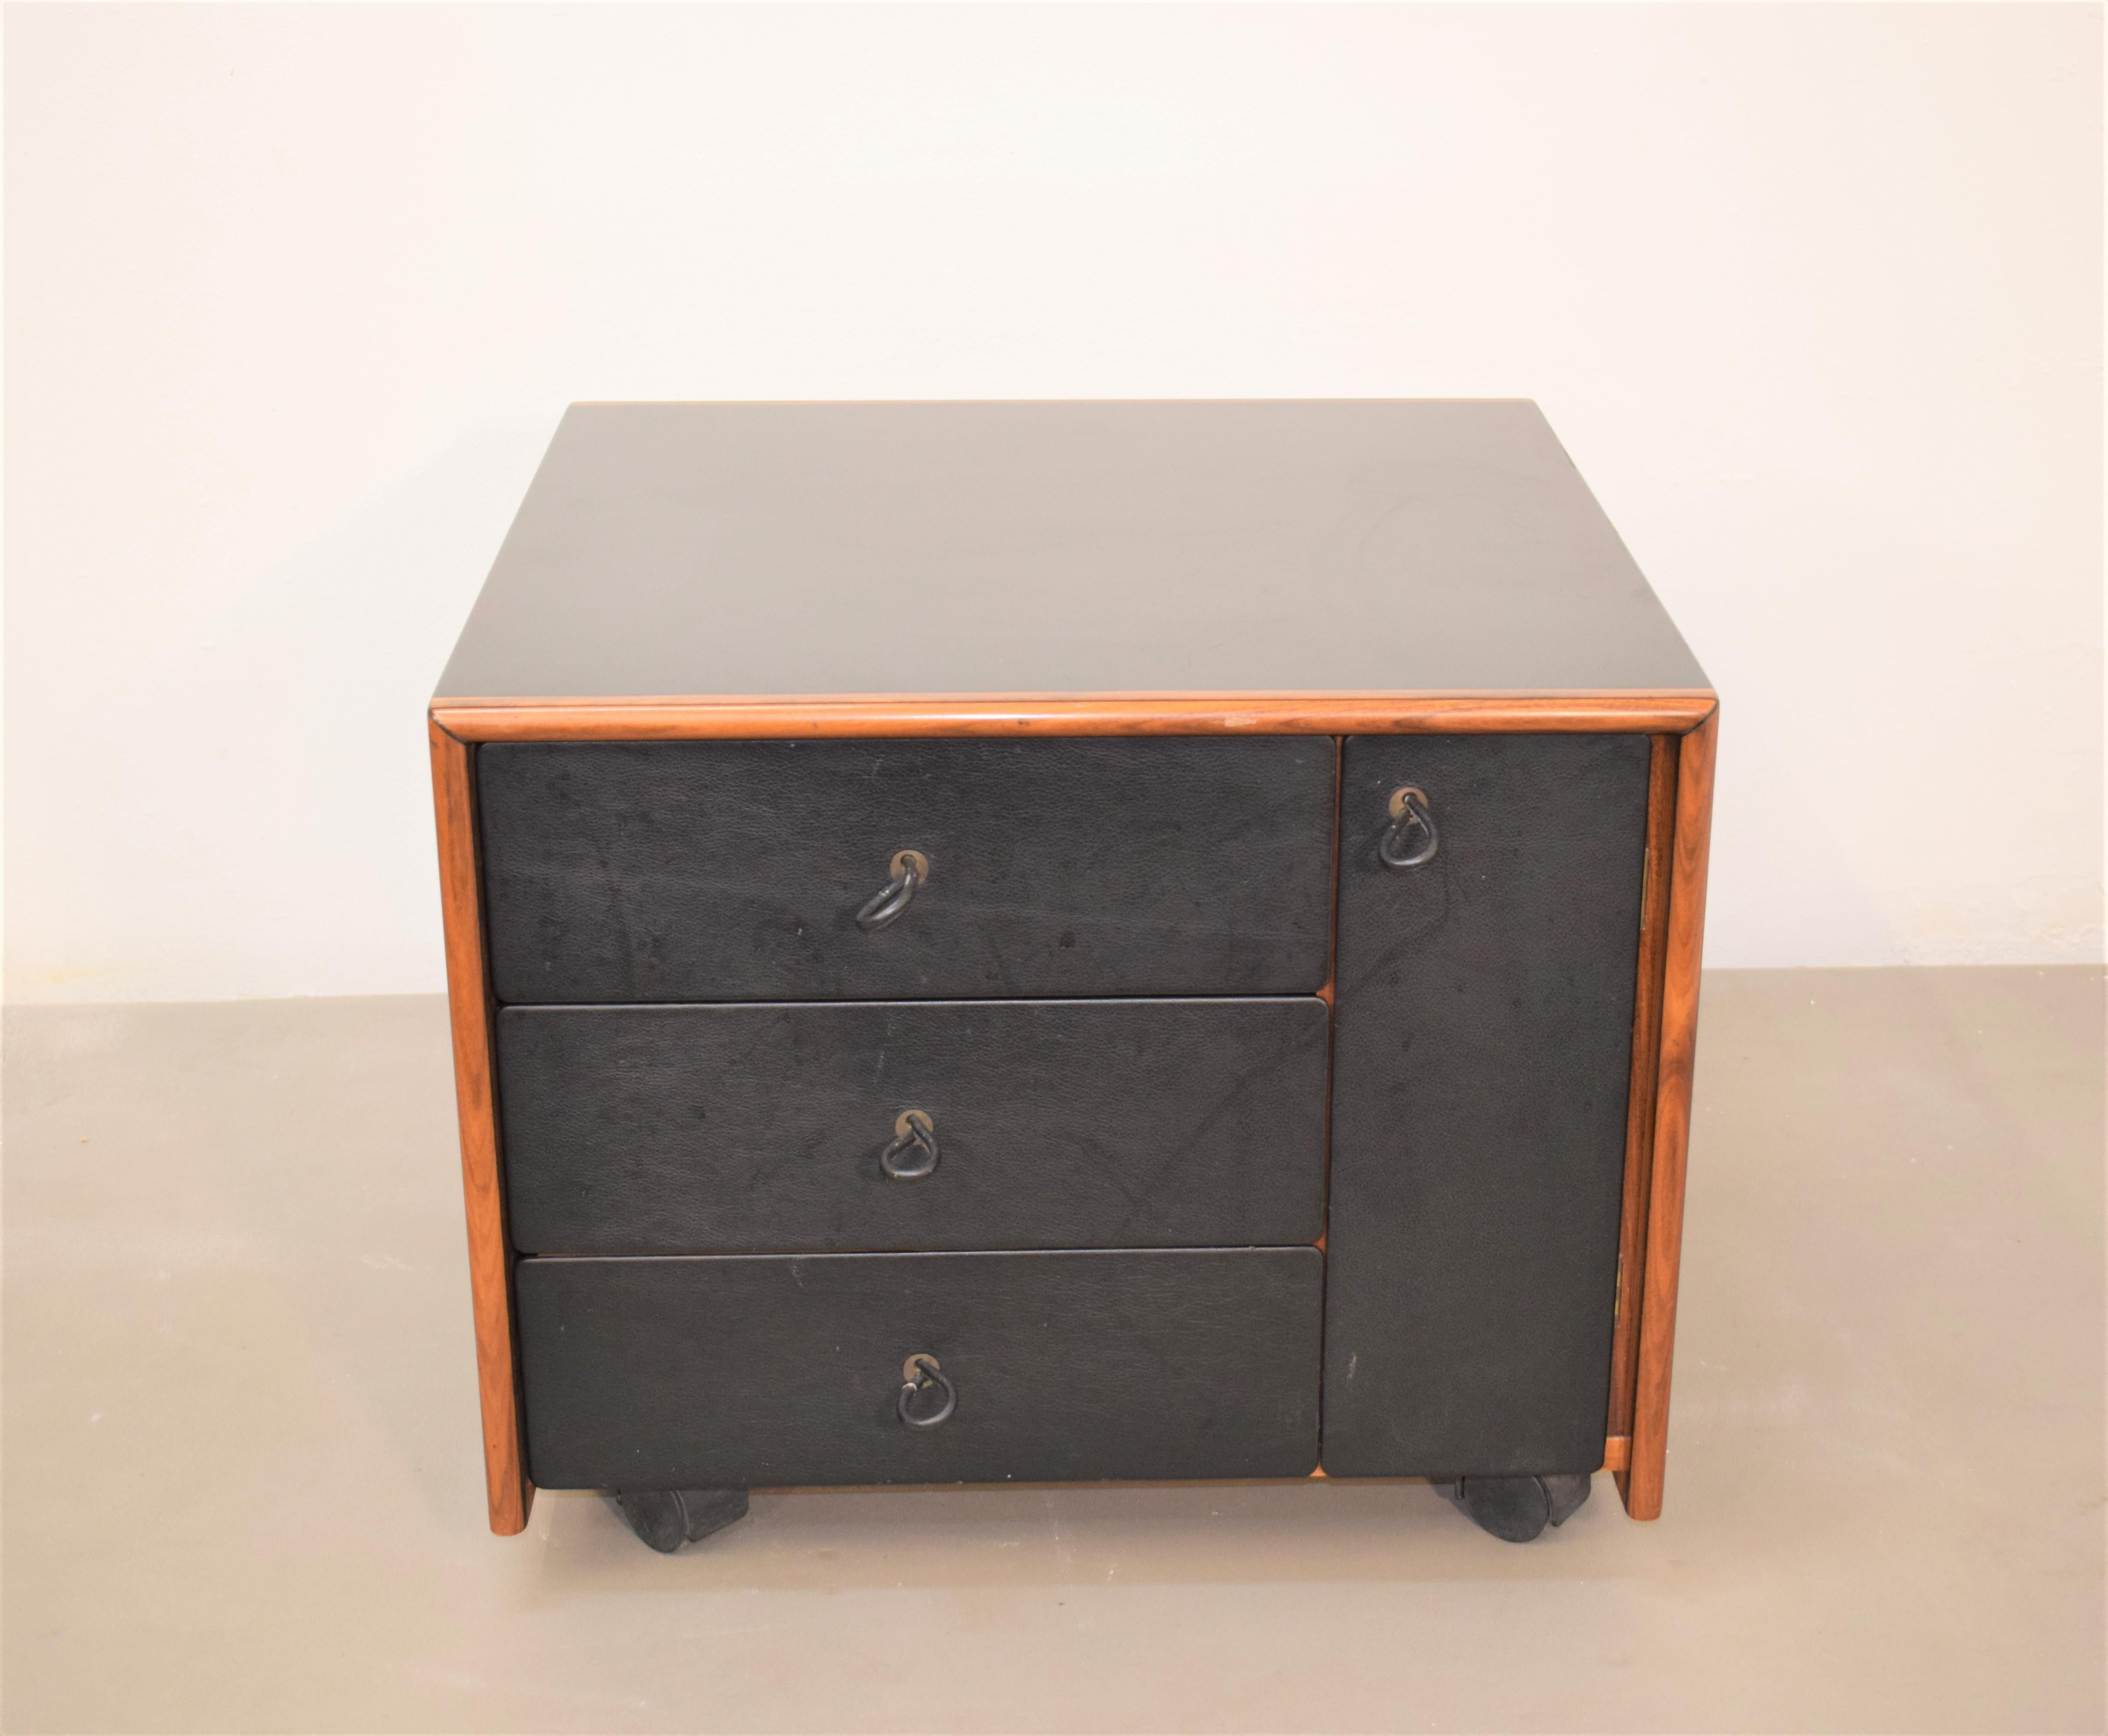 Afra Scarpa & Tobia Scarpa for Maxalto 'Artona' small chest of drawers, 1970s.

Dimensions: H= 48 cm; W= 59 cm; D= 59 cm.